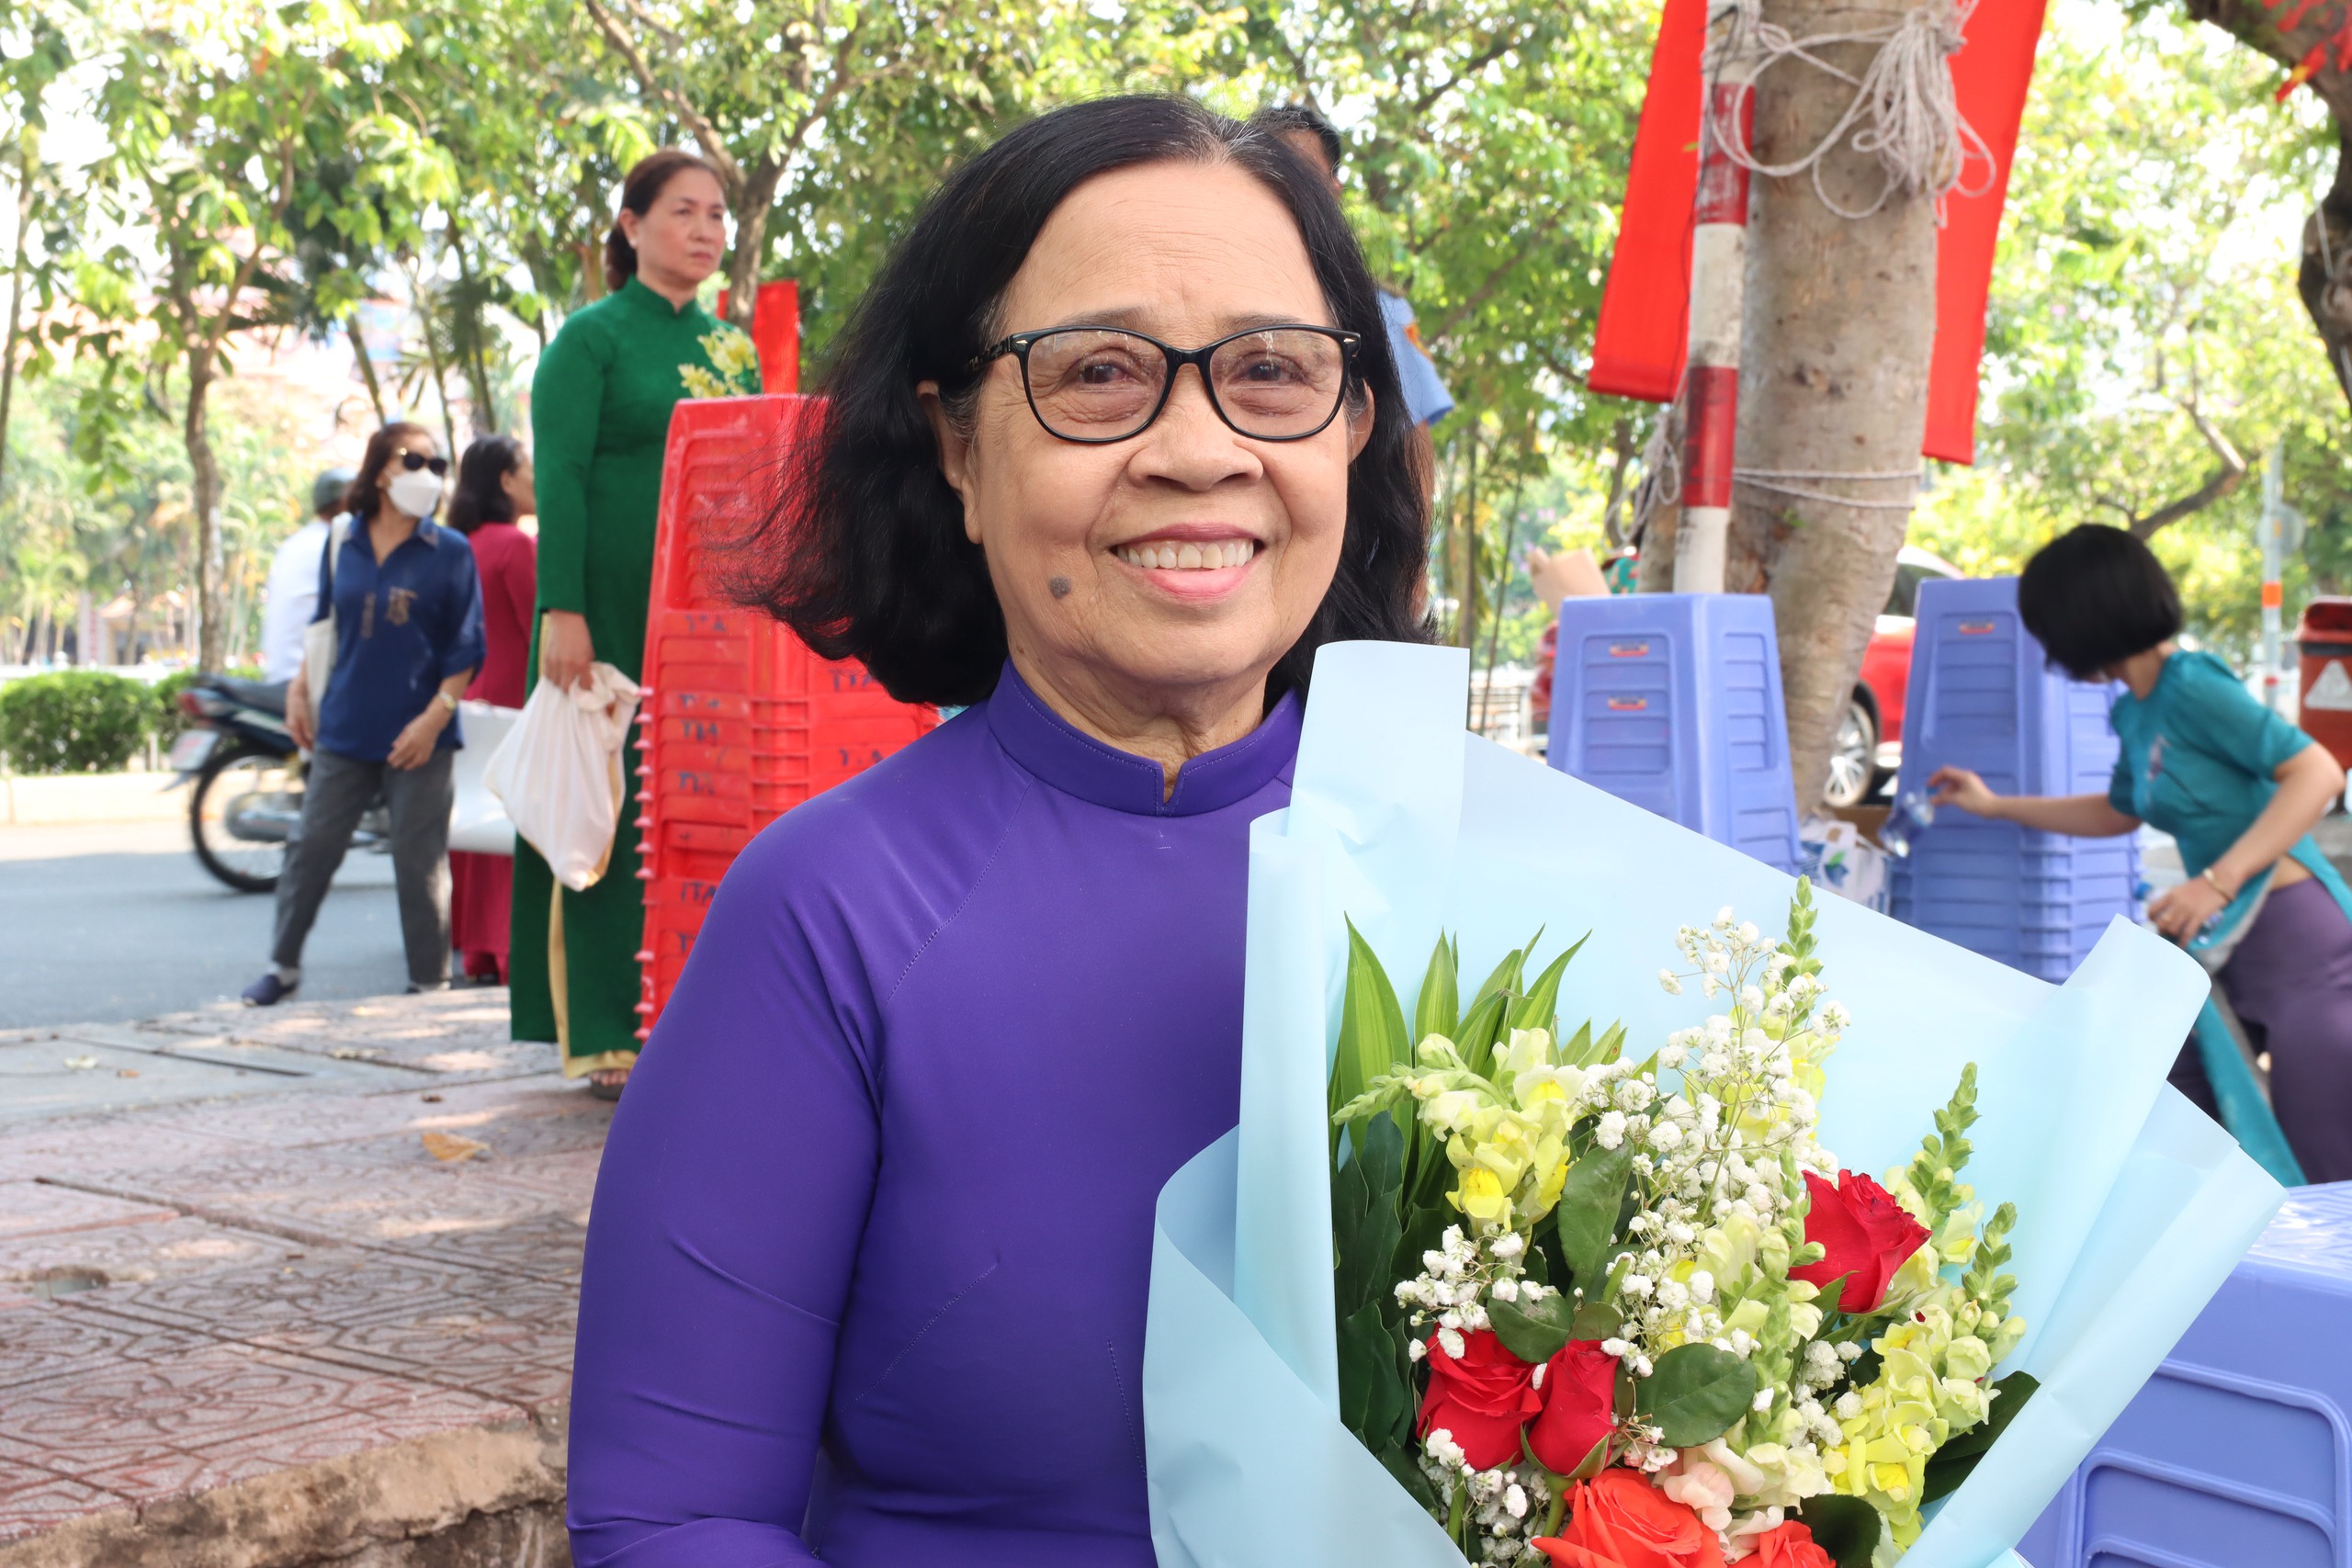 Sau khi nghỉ hưu, bà Nguyễn Thị Kim Hoa đã về làm việc tại khu phố từ năm 2008